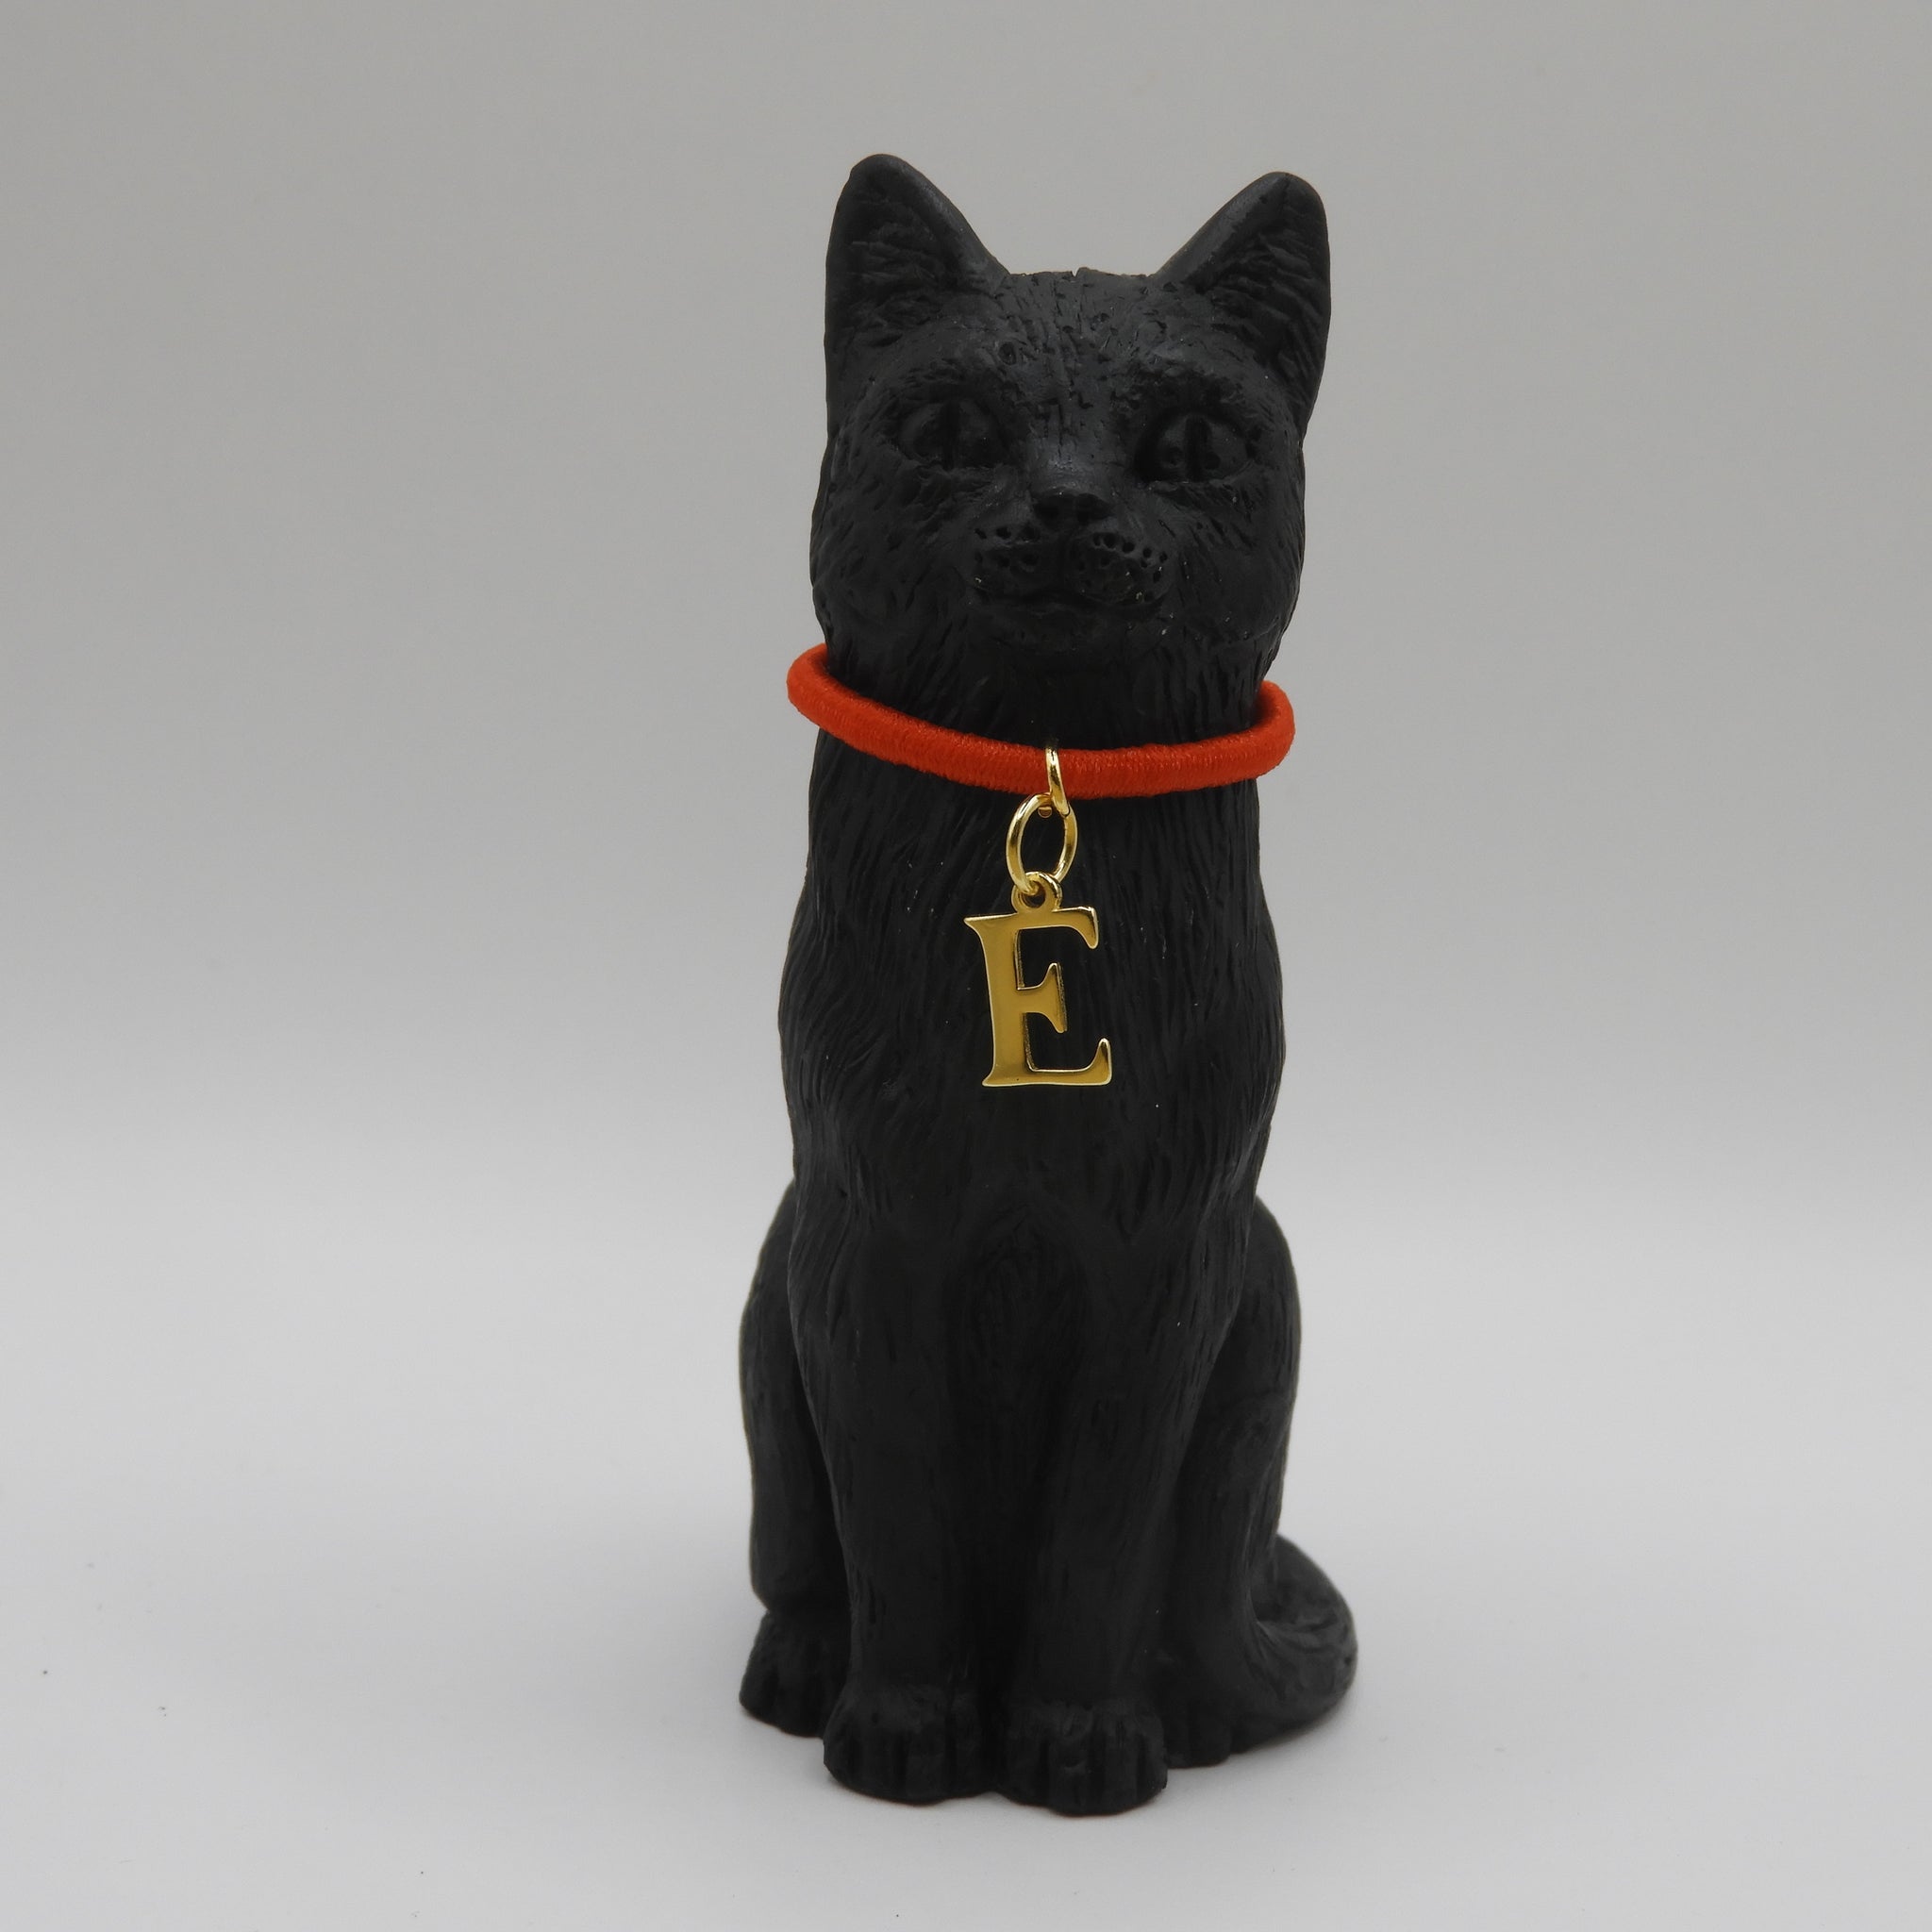 8cm Original Lucky Cat with Initial E Charm